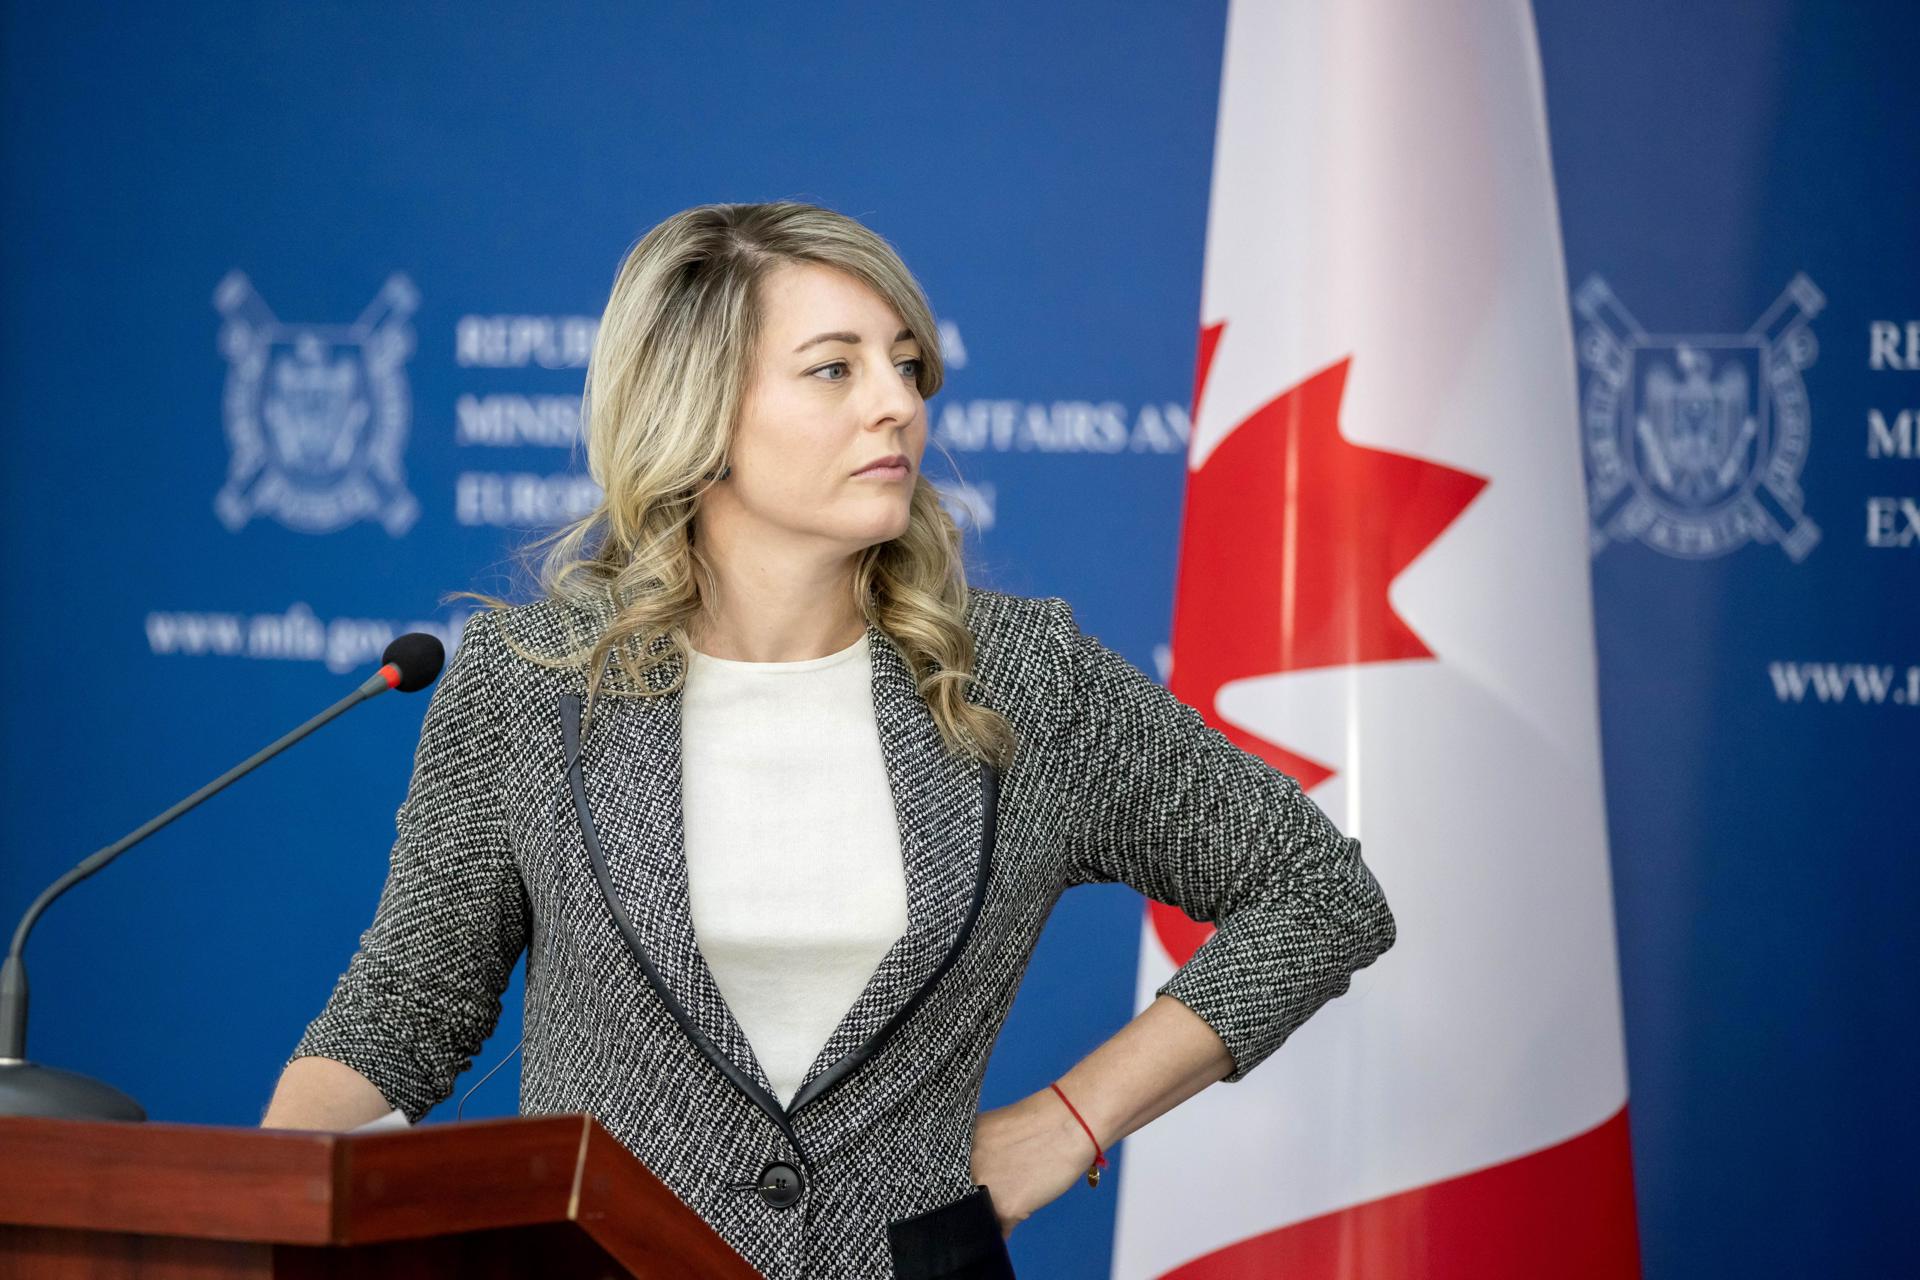 La ministra de Asuntos Exteriores de Canadá, Mélanie Joly, en una fotografía de archivo. EFE/Dumitru Doru